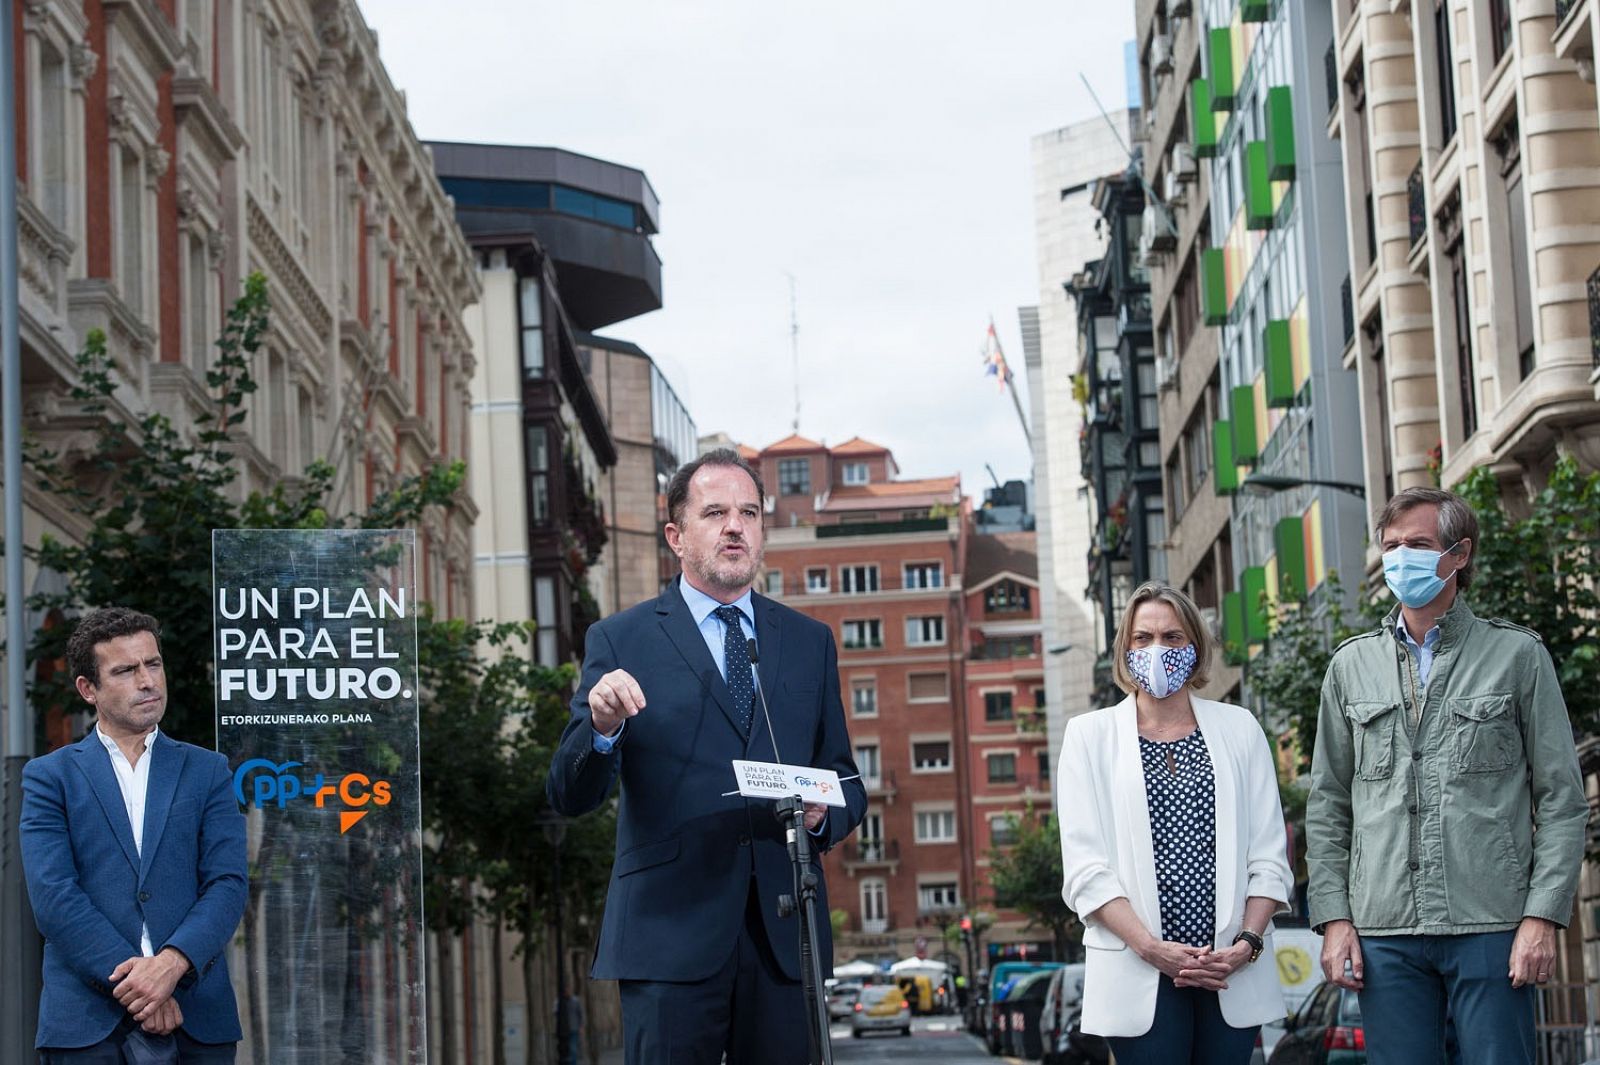 El empleo, tema central en este martes de campaña electoral en País Vasco